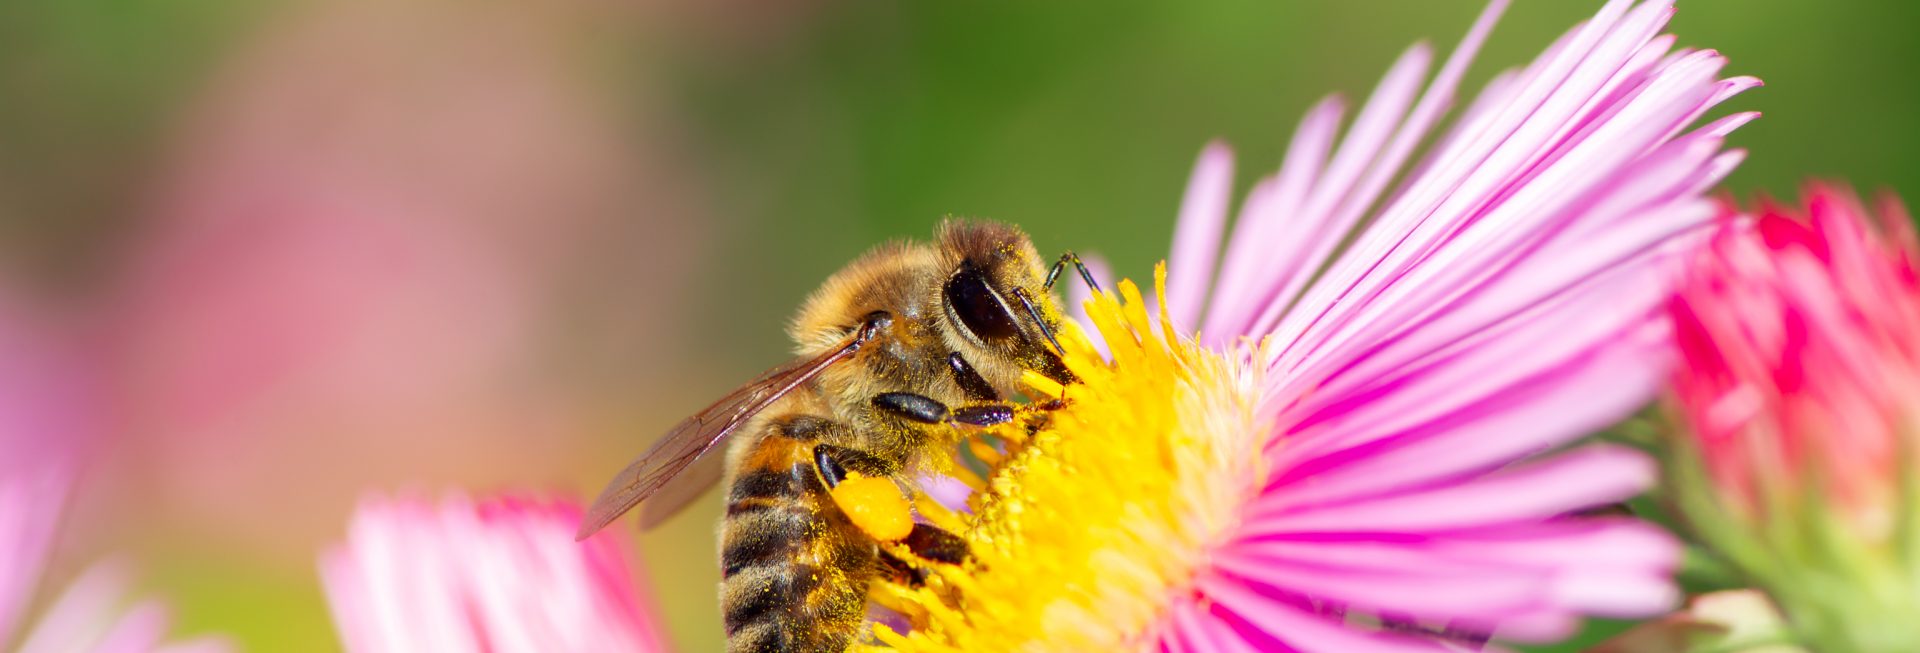 Zdjęcie pszczoły miodnej zbierającej nektar z różowego kwiatku.